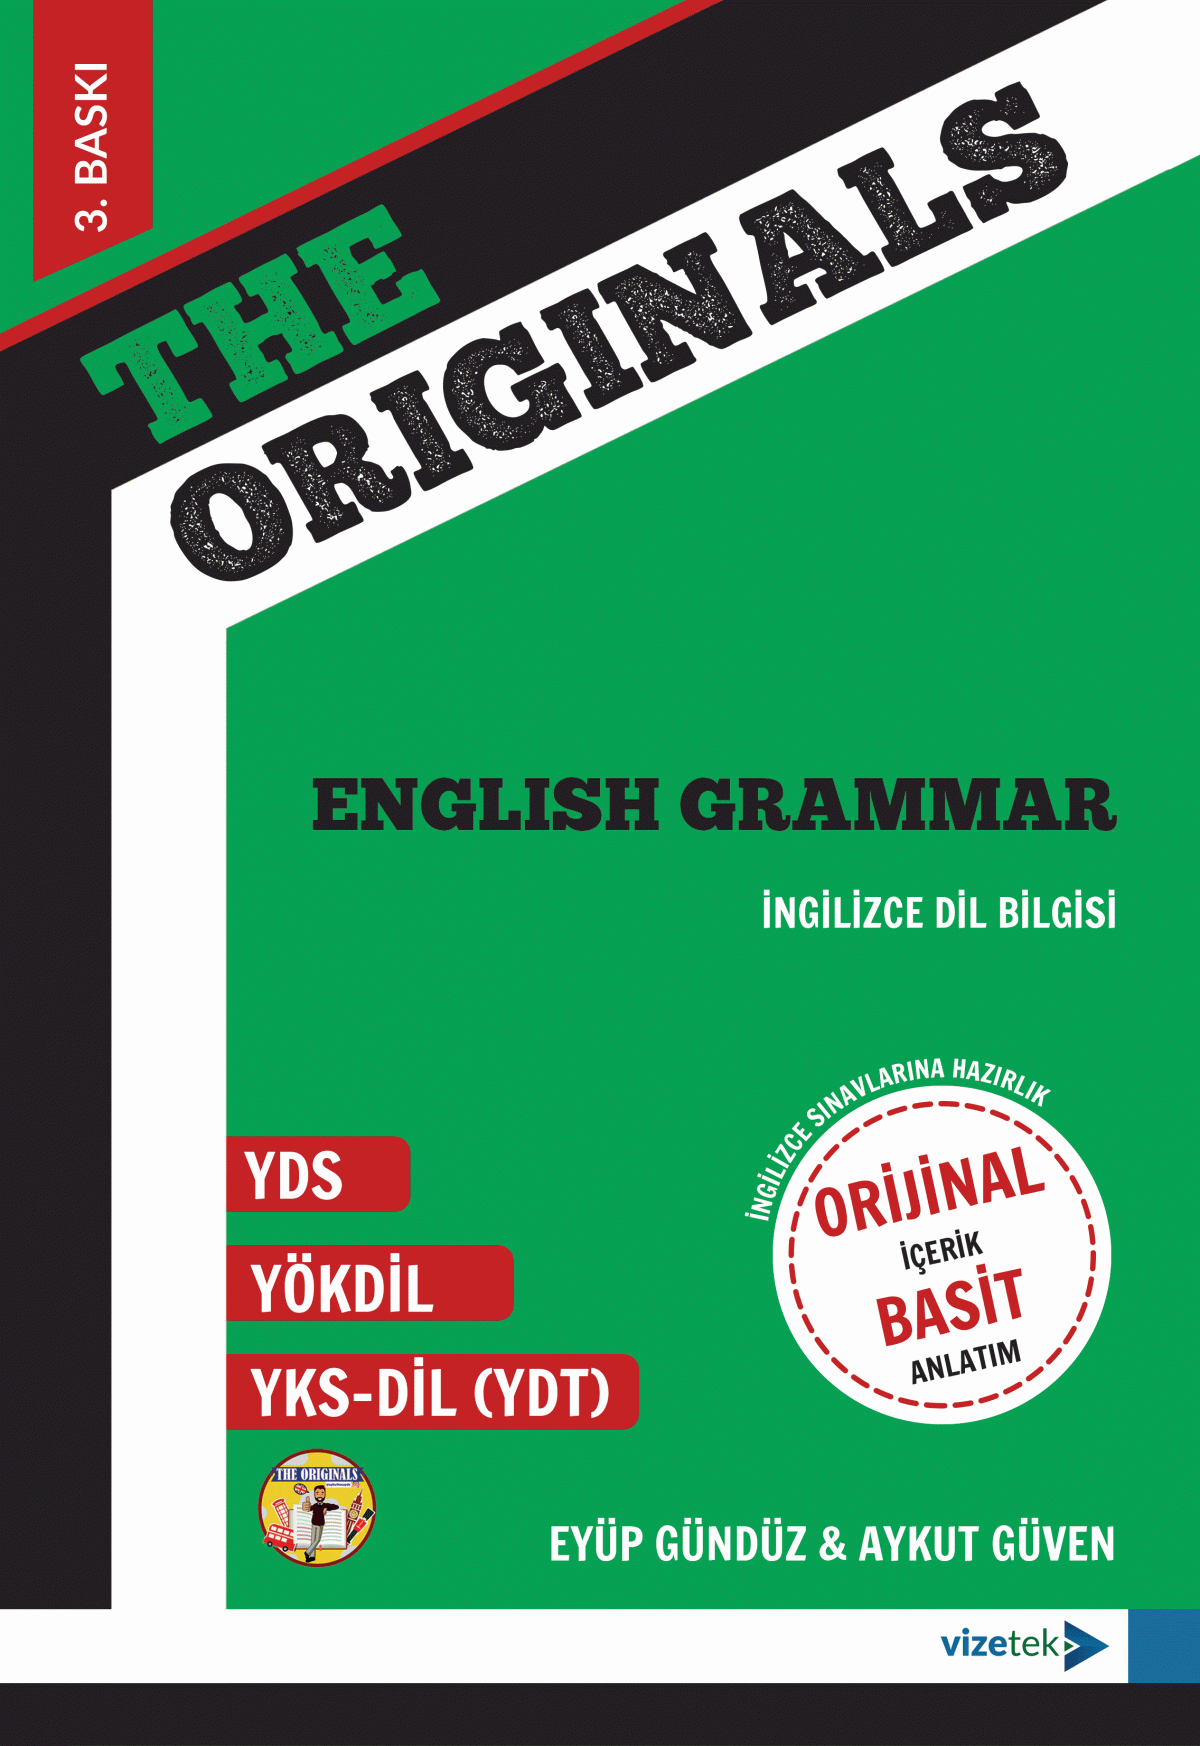 The Originals English Grammar